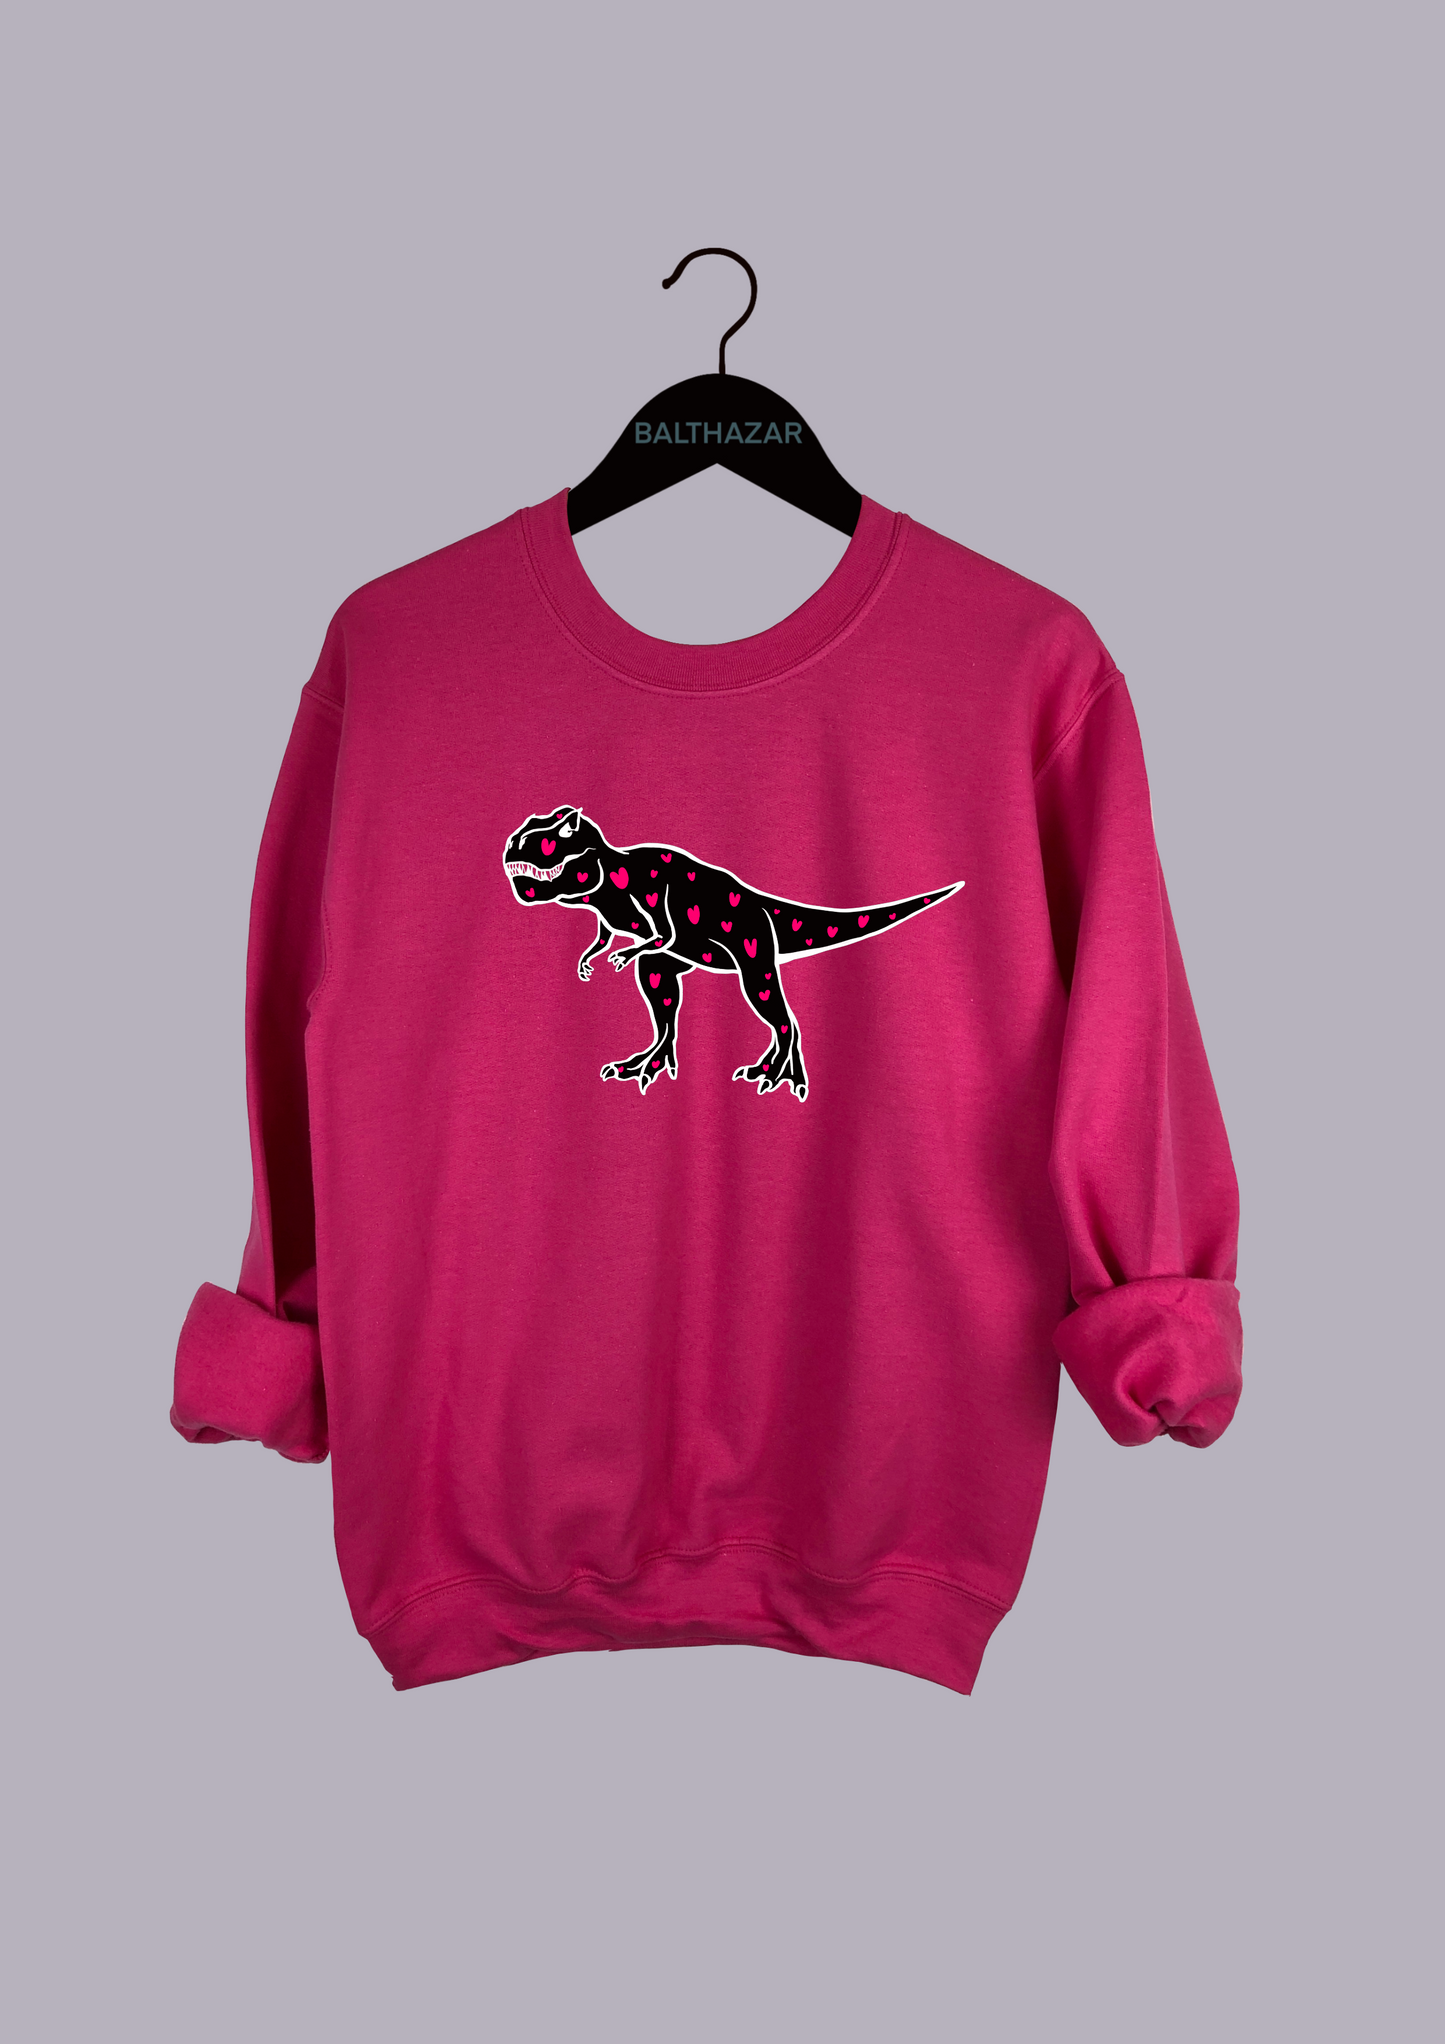 Abstract Love heart T-Rex sweatshirt - customisable